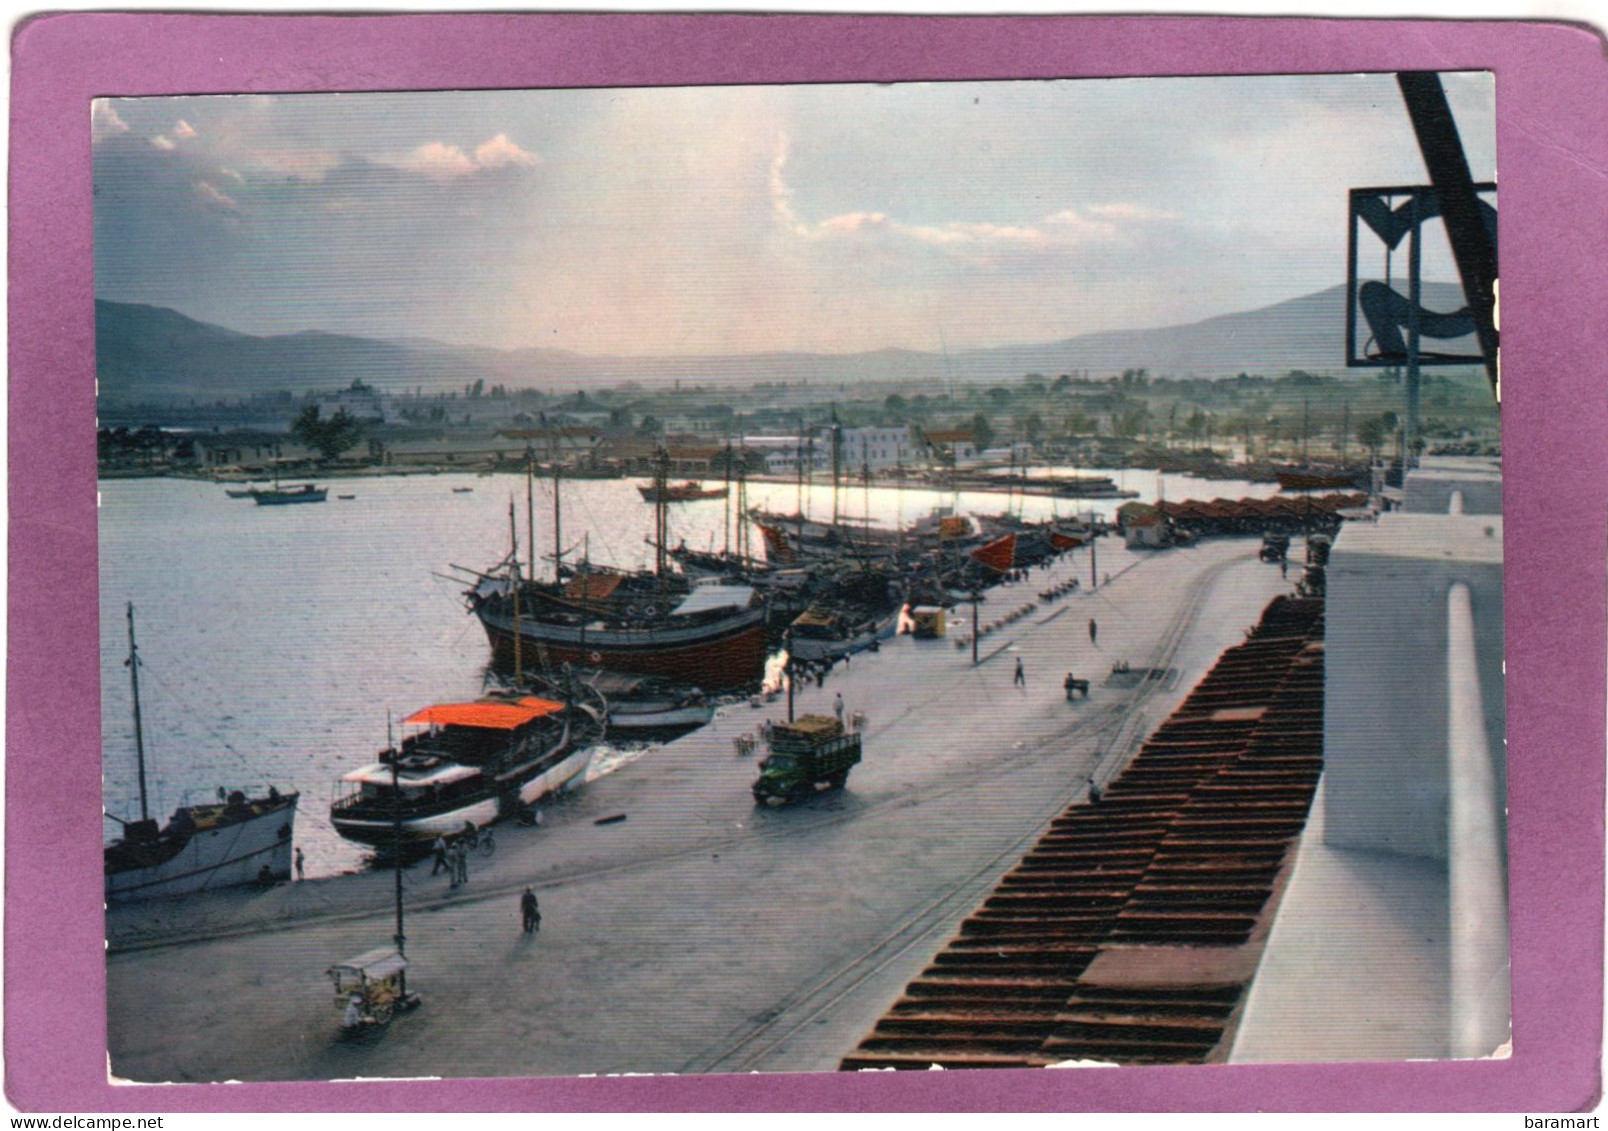 ΒΟΛΟΣ  'Aπό Τό λιμάνι  VOLOS Vue Du Port View Of The Harbour  Der Hafen - Greece